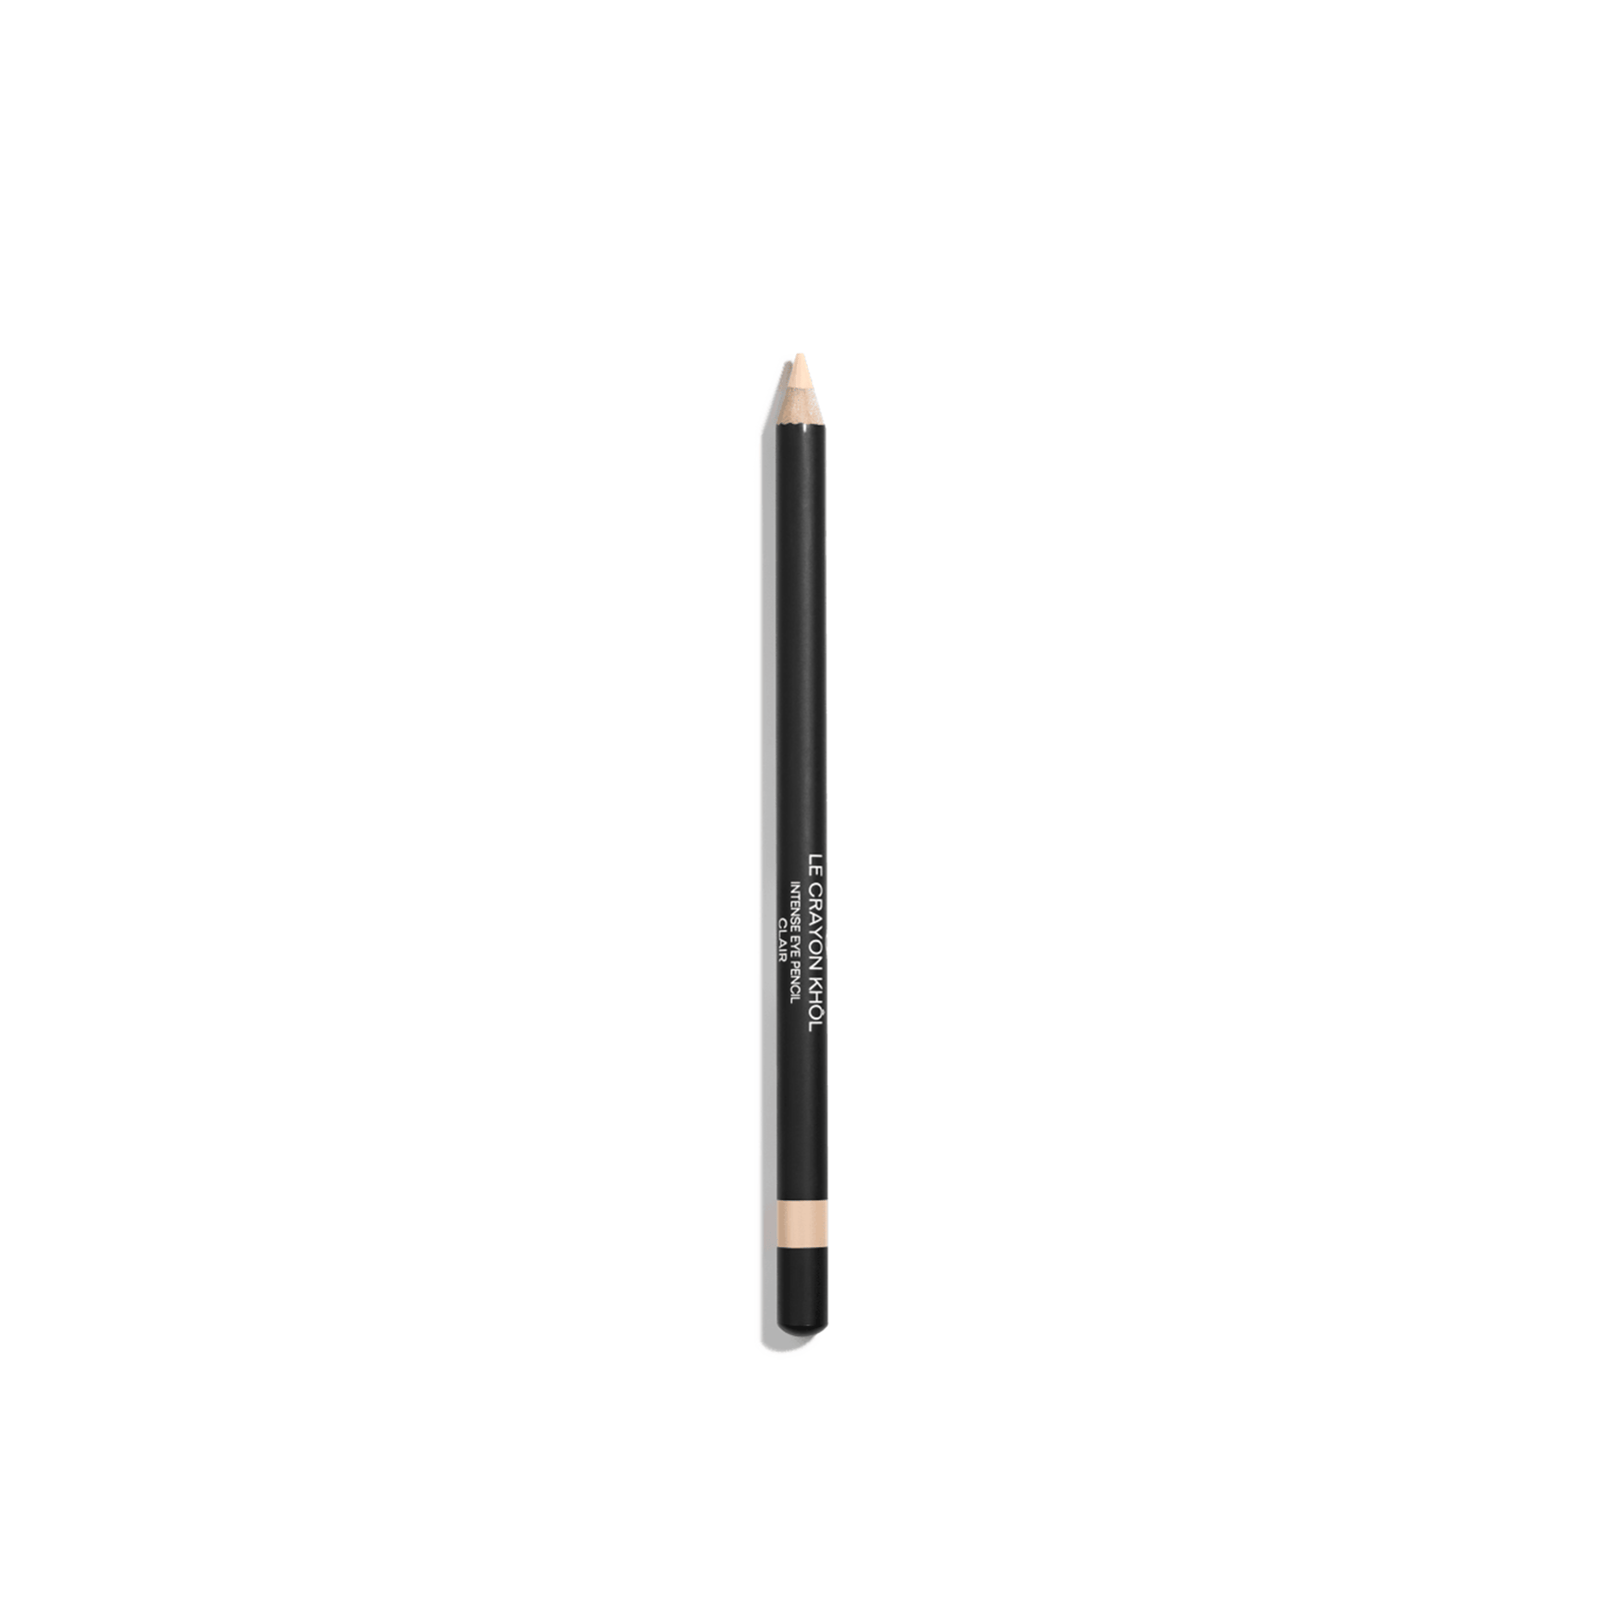 CHANEL Le Crayon Khôl Intense Eye Pencil 69 Clair 1.4g